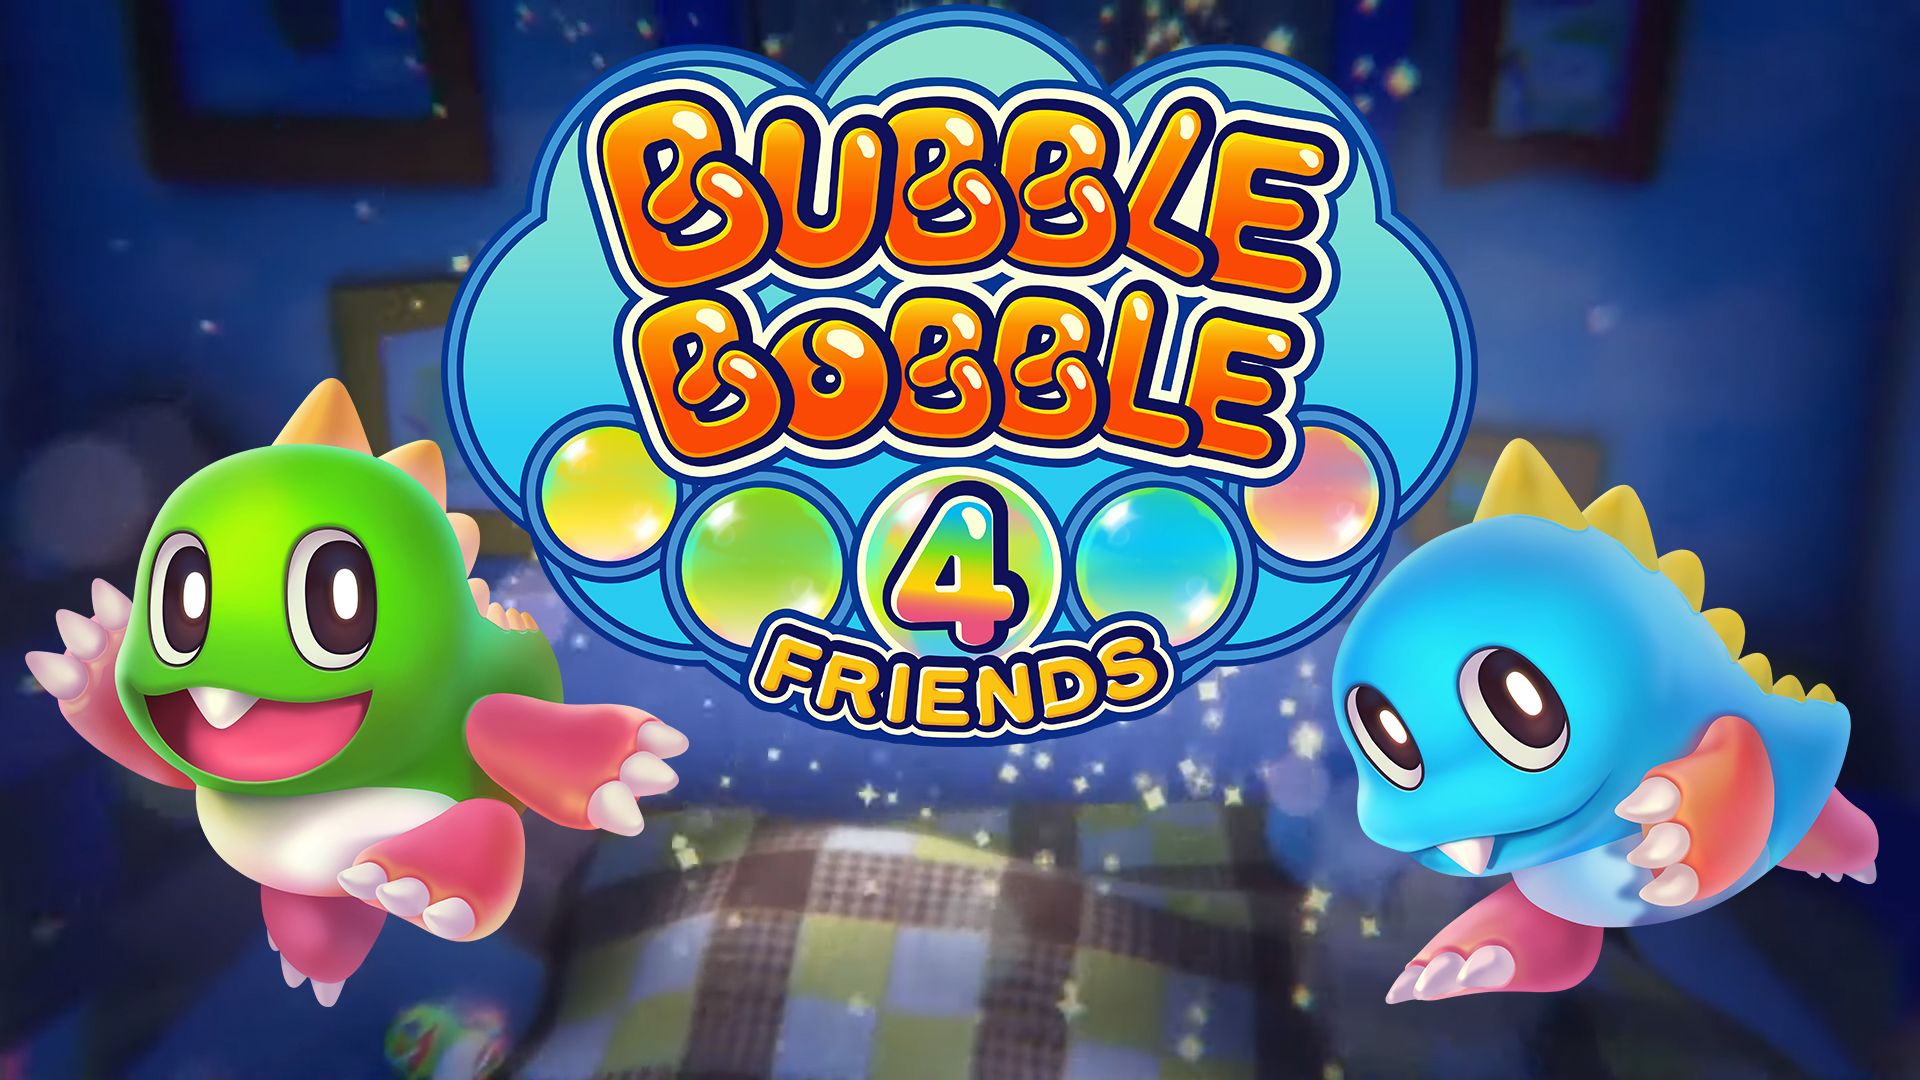 Bubble Bobble 4 Friends Game Wallpaper 69556 1920x1080px